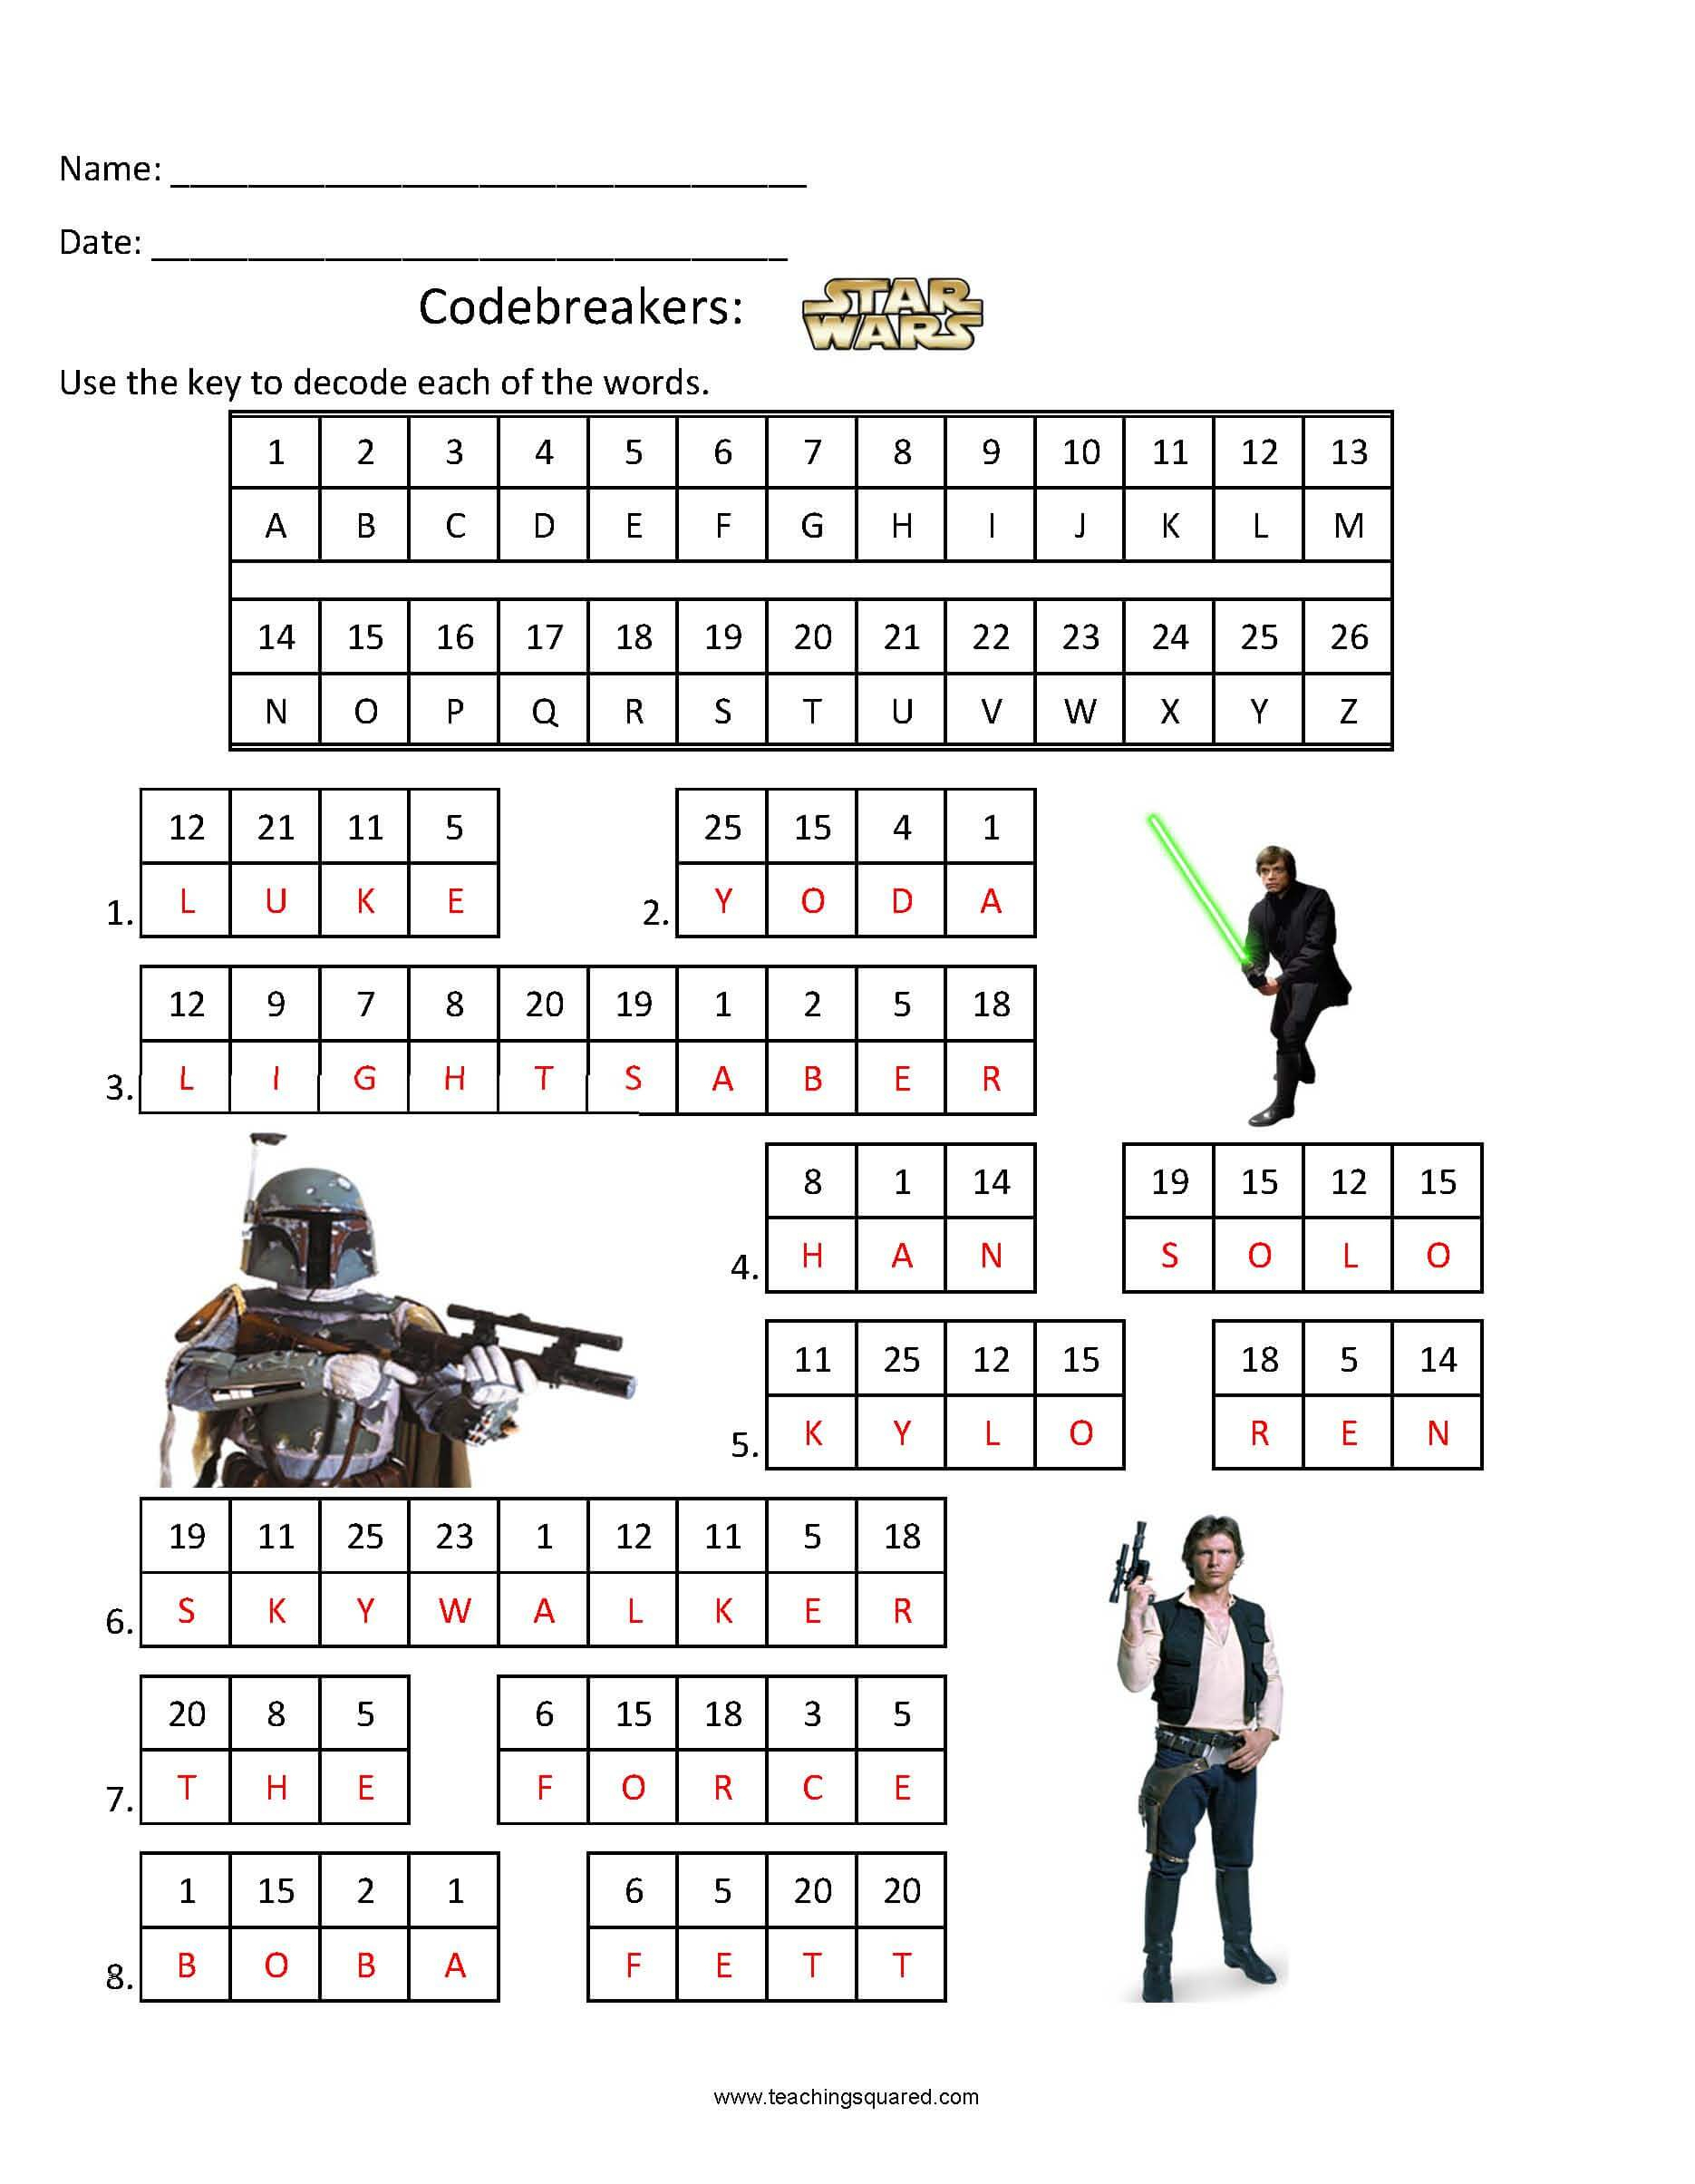 Codebreakers- Star Wars 1 - Teaching Squared - Star Wars Crossword Puzzle Printable